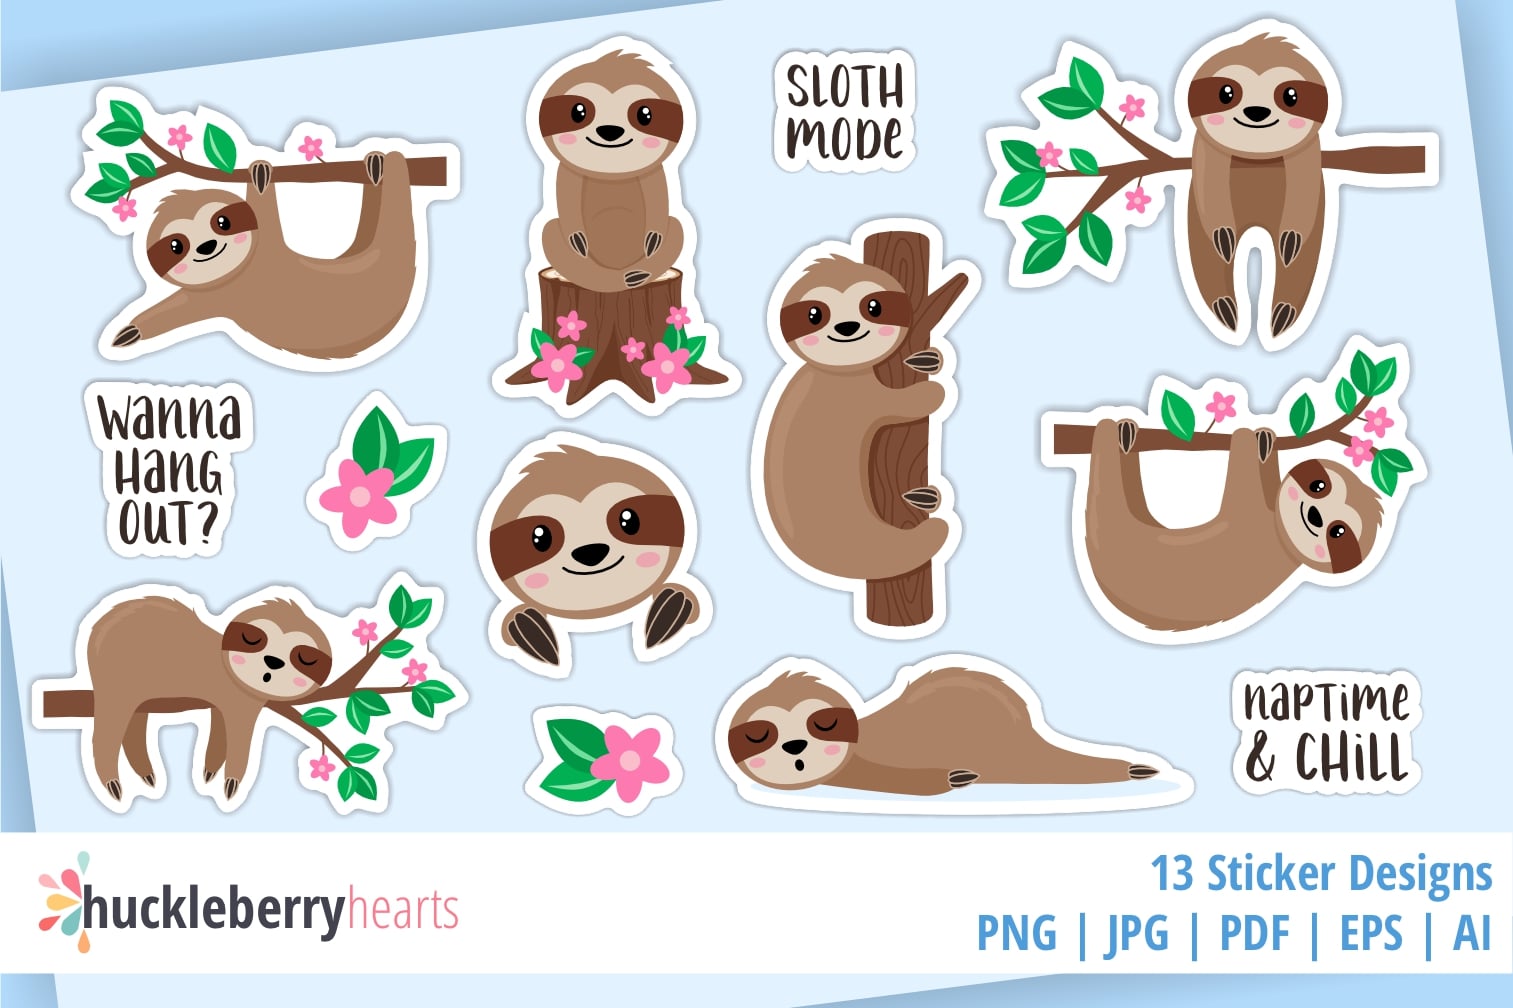 Sloth Mode Sticker Bundle